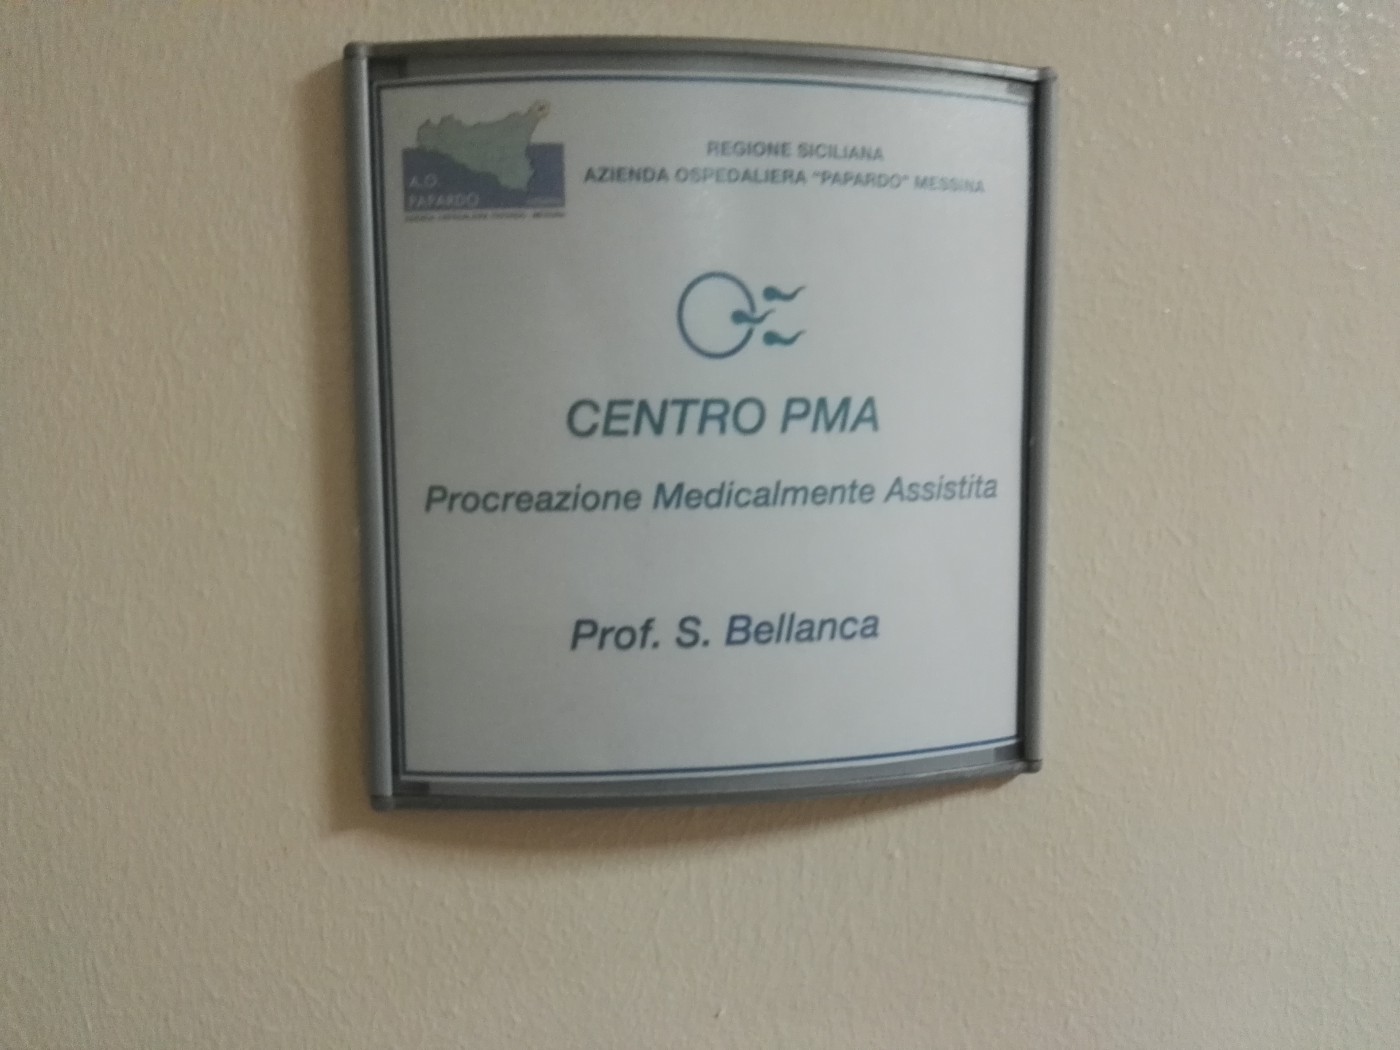 Foto 06 - responsabile dr. Bellanca - Centro Procreazione Medicalmente Assistita - Papardo, Messina